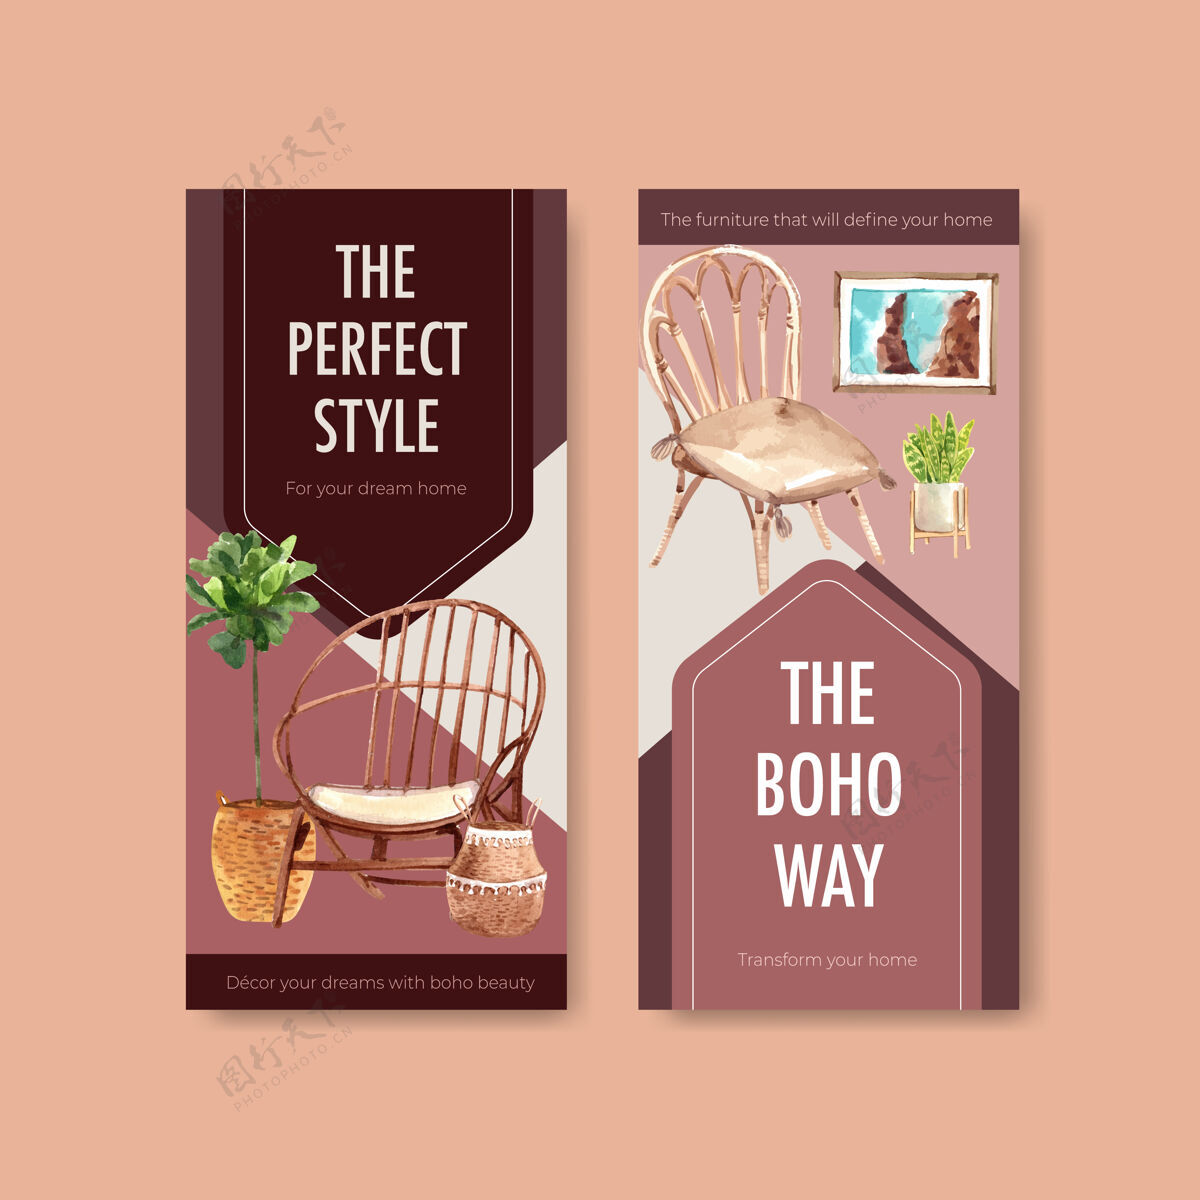 广告传单模板波西米亚家具概念设计小册子和传单水彩插图斯堪的纳维亚室内家具